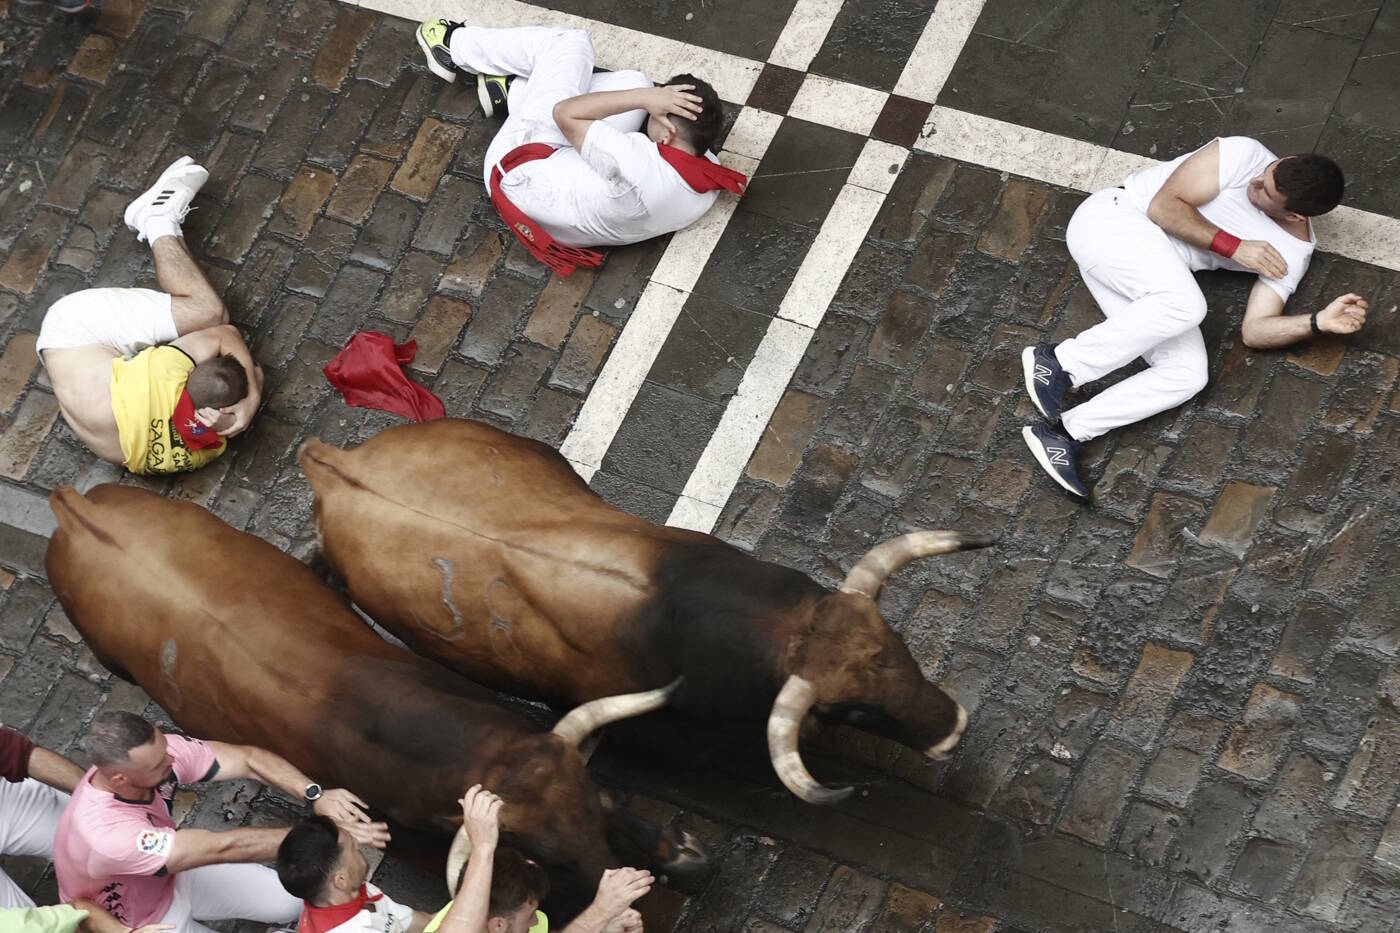 Homens provocam touros, são perseguidos, deitam no chão em posição